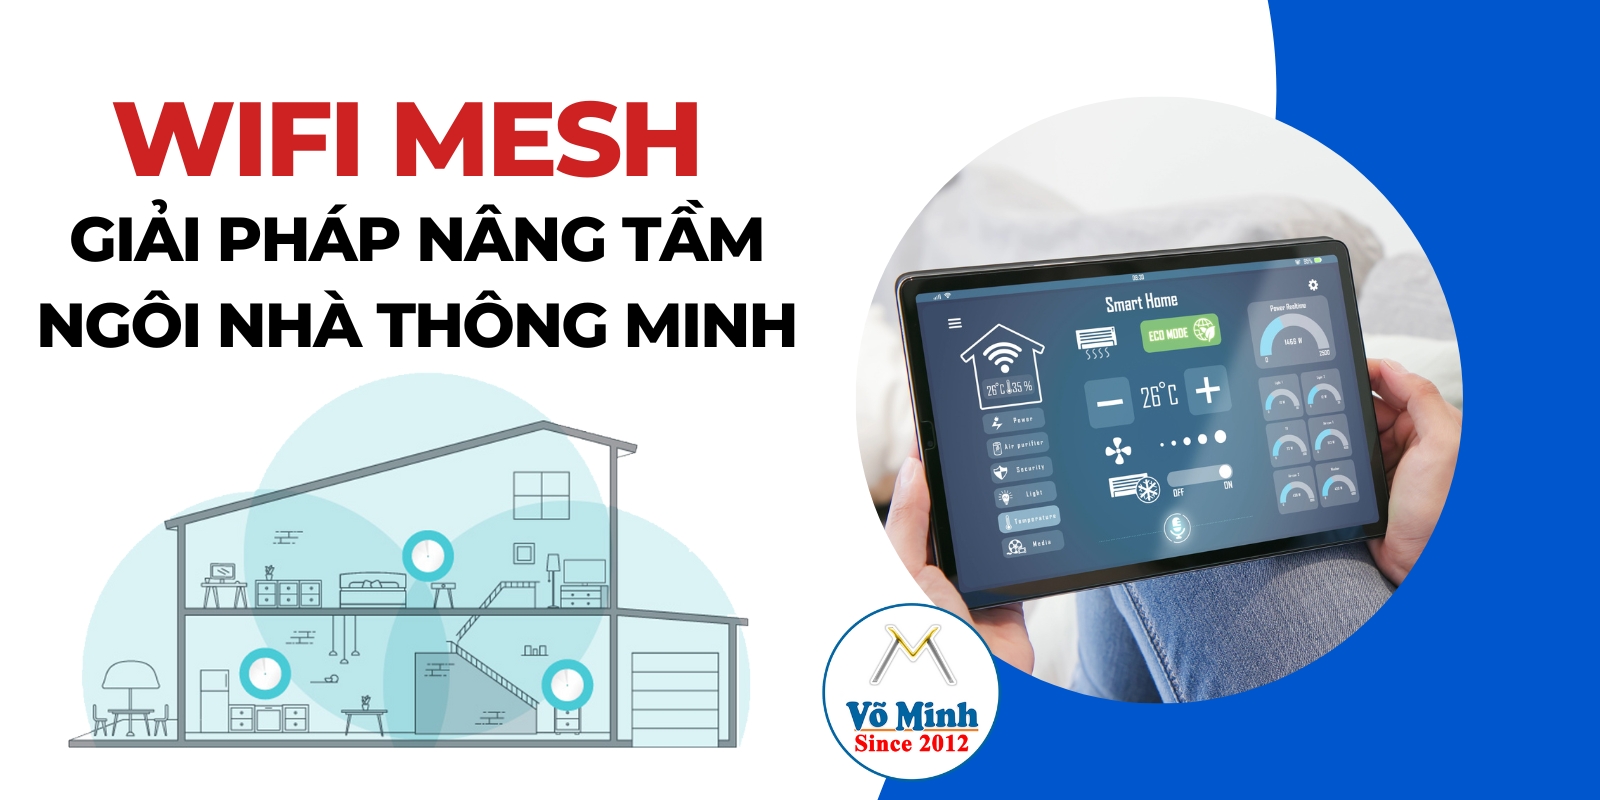 Wifi-MESH-giai-phap-nang-tam-cho-ngoi-nha-thong-minh